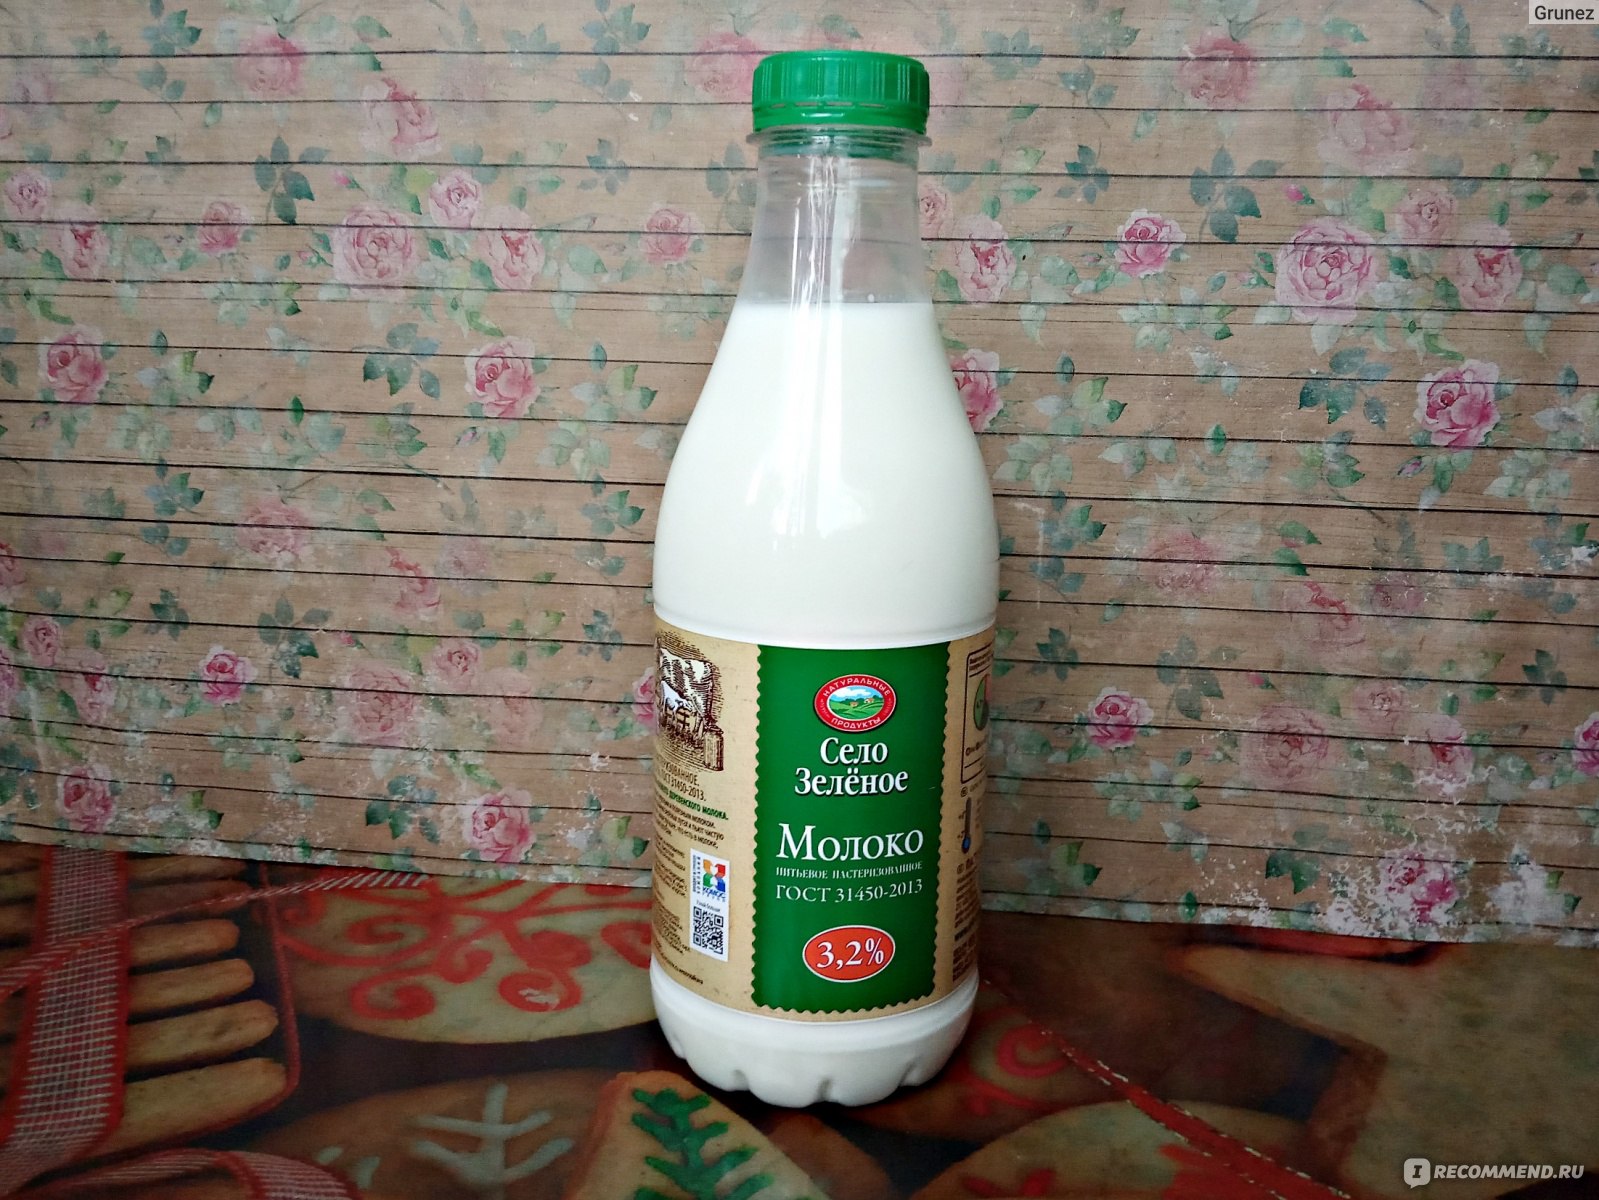 Молоко “село зелёное” (3,2%, 950 г)